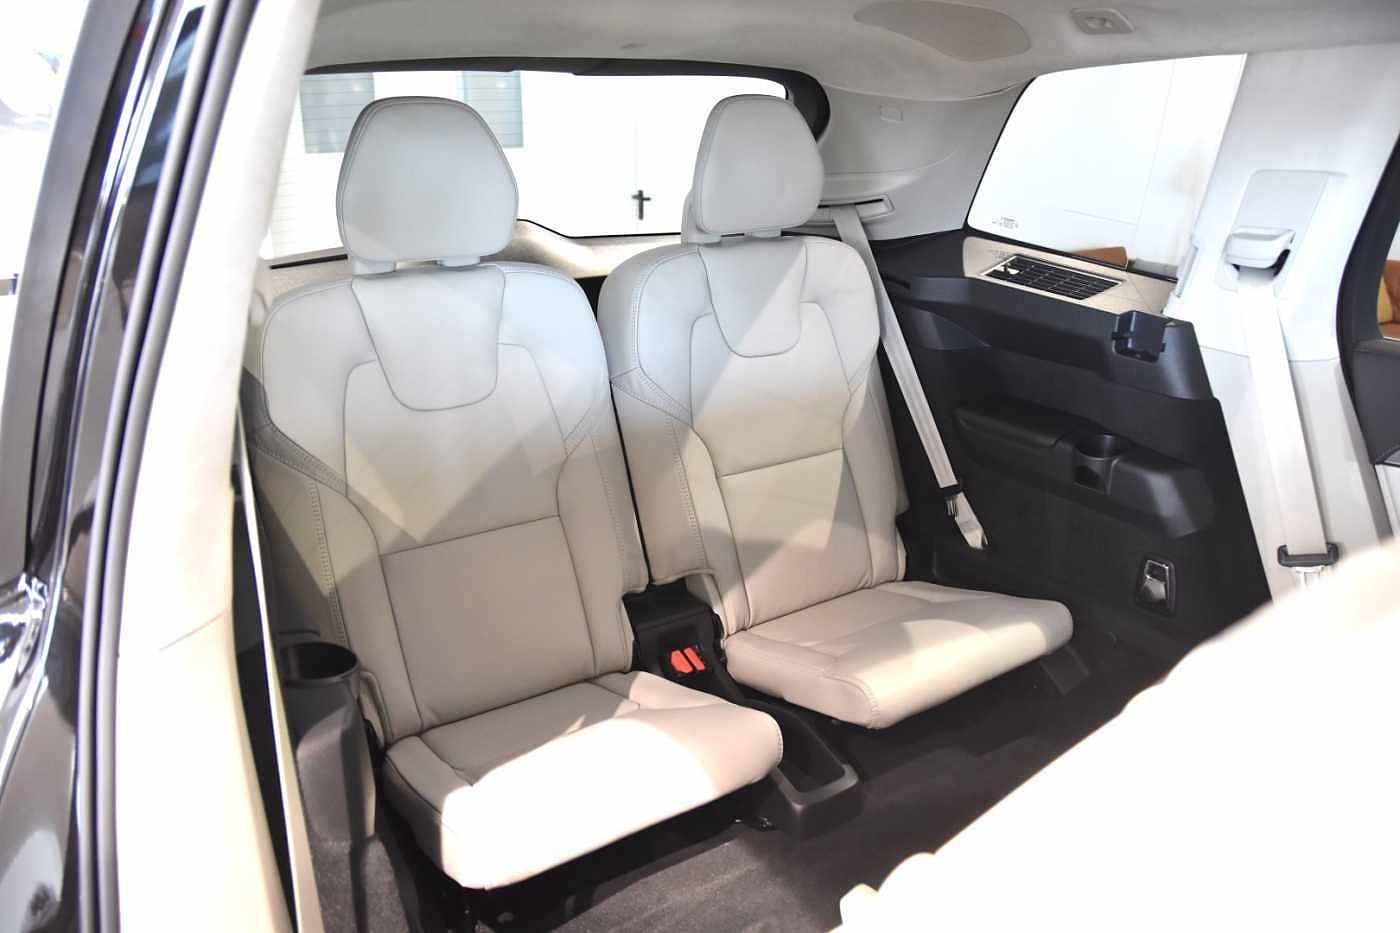 Volvo  Ultimate, B5 AWD mild hybrid, Πετρέλαιο, Bright, Επτά ανεξάρτητα καθίσματα